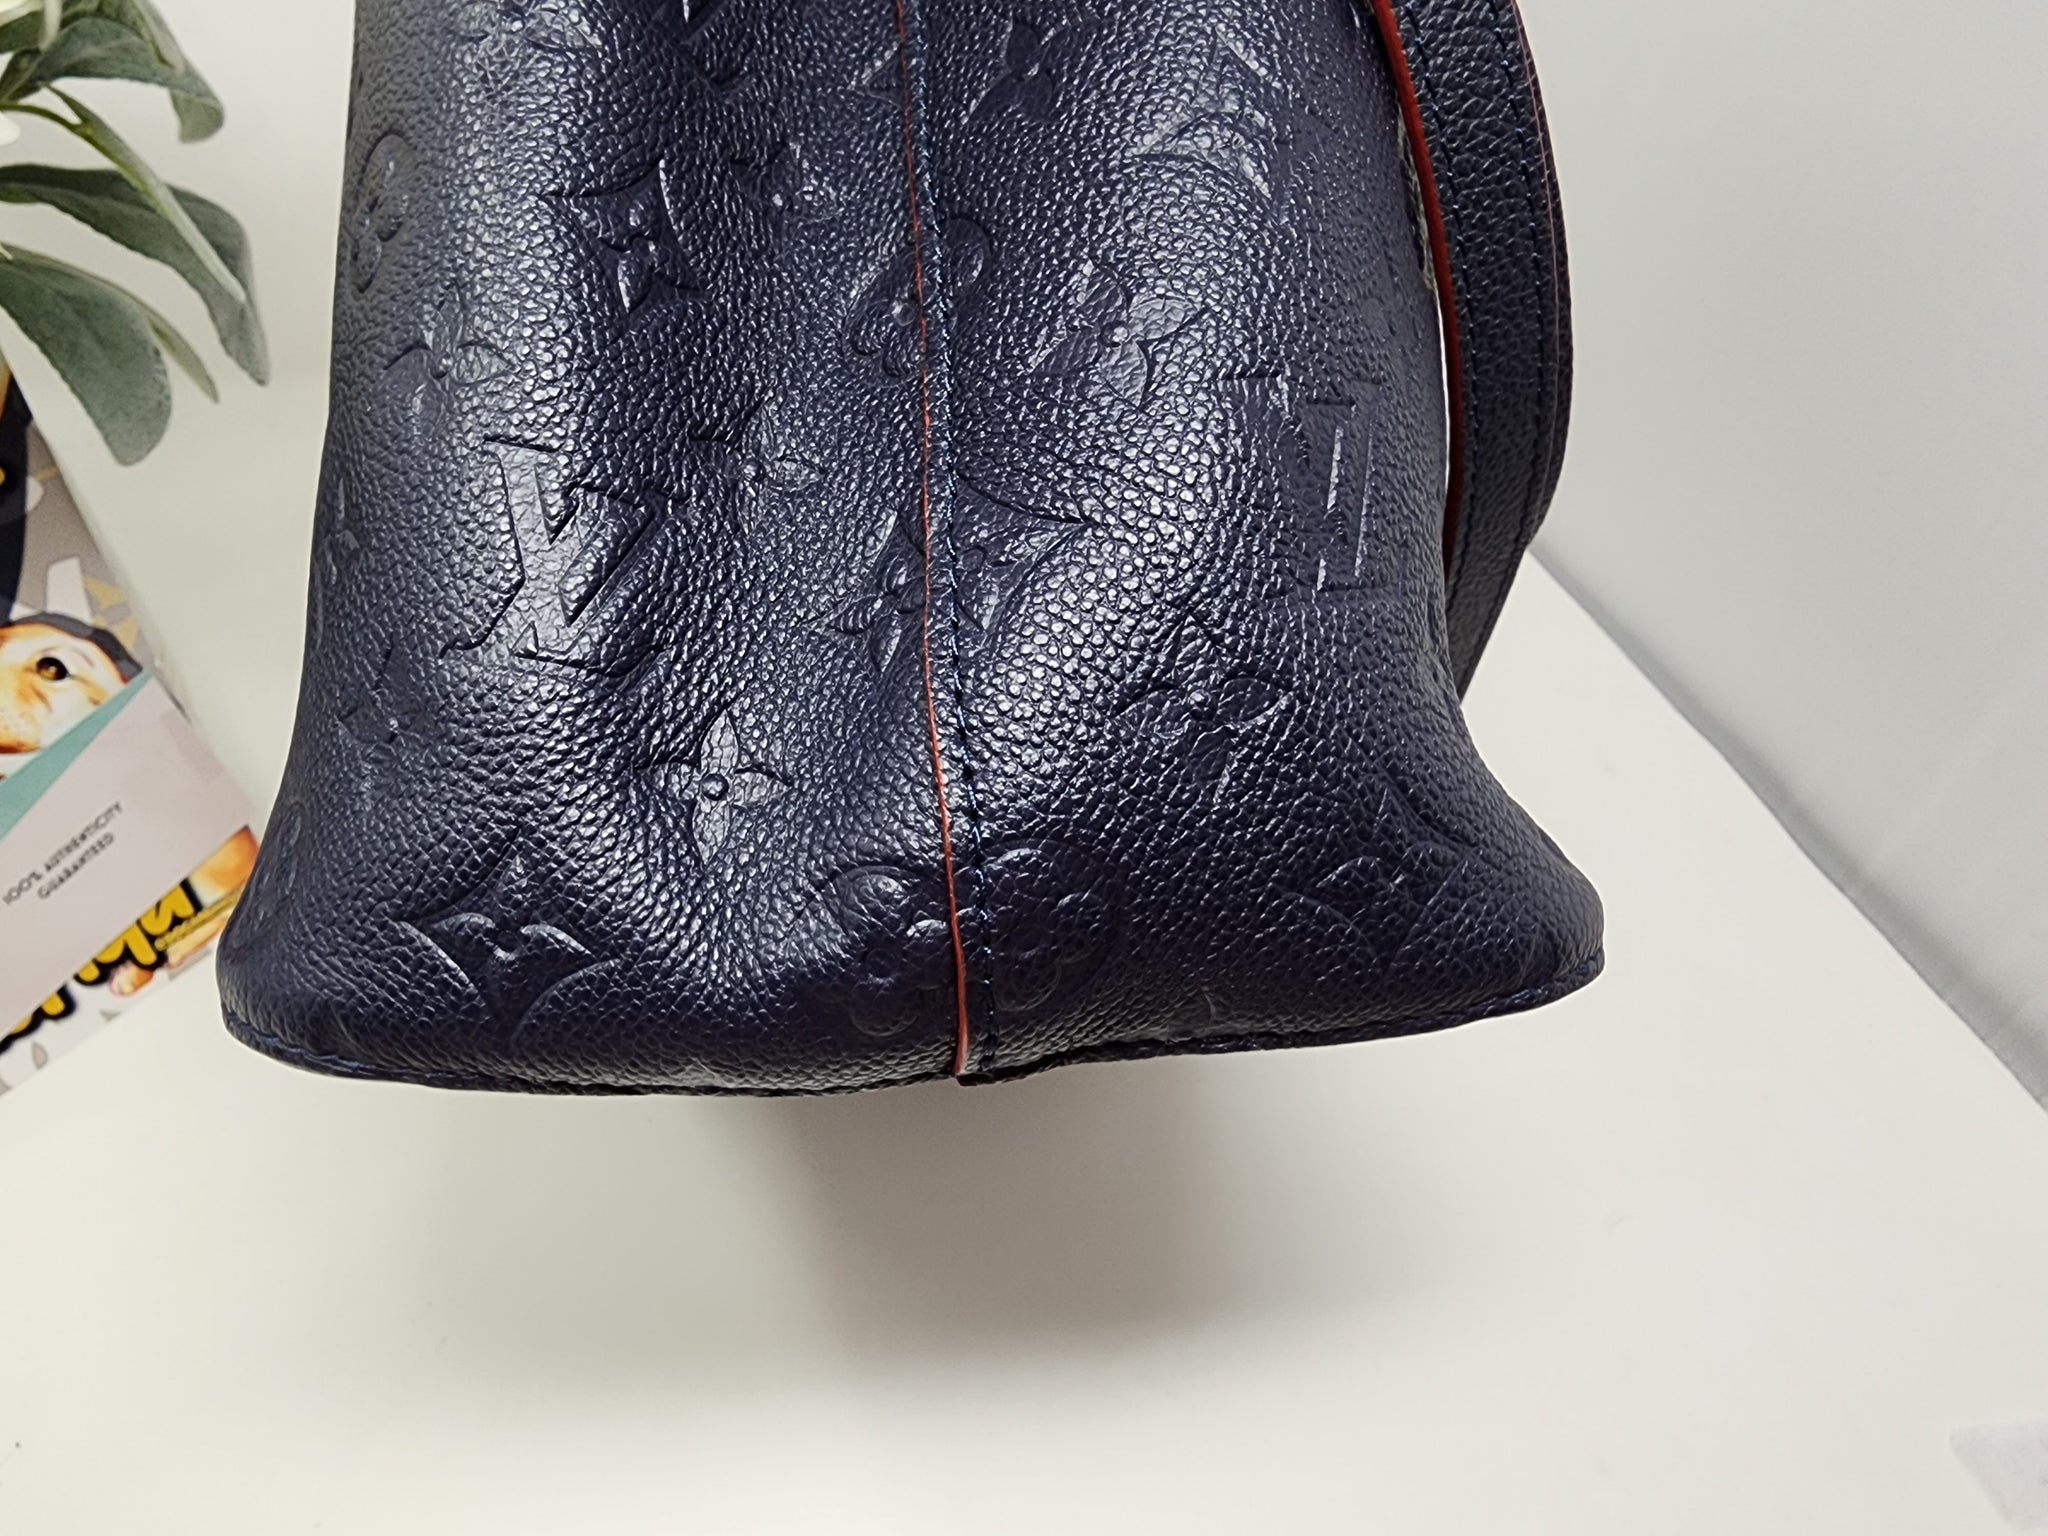 Authentic Louis Vuitton Navy Blue Monogram Empreinte Leather Neonoe MM Bag